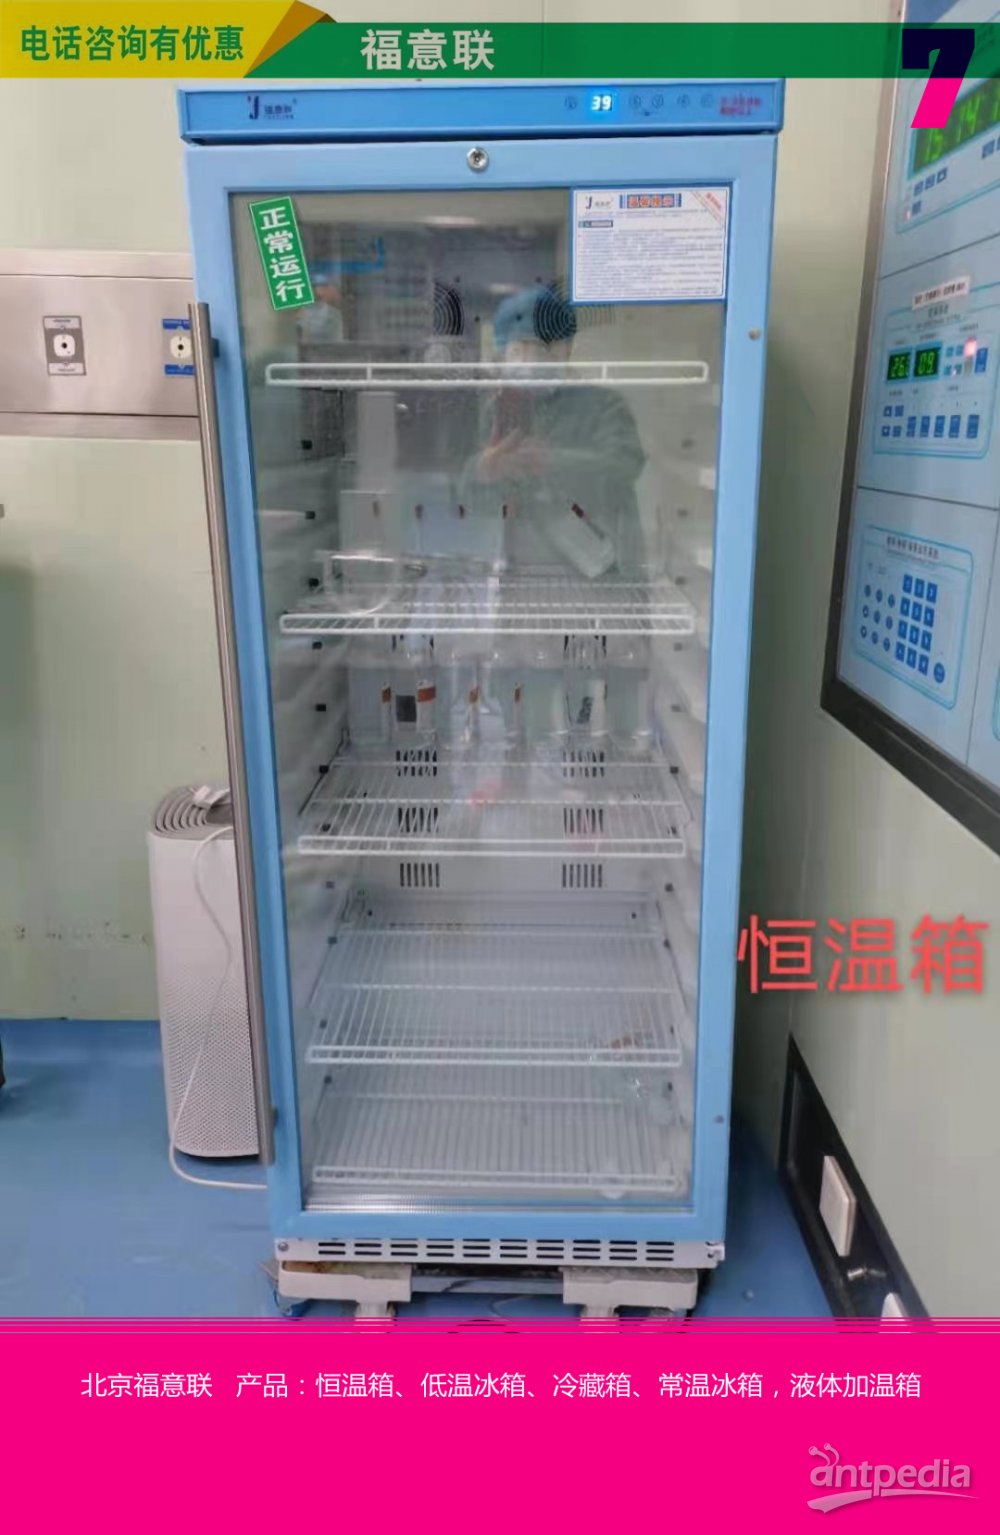 肺功能室多功能加温箱FYL-YS-280L、视频